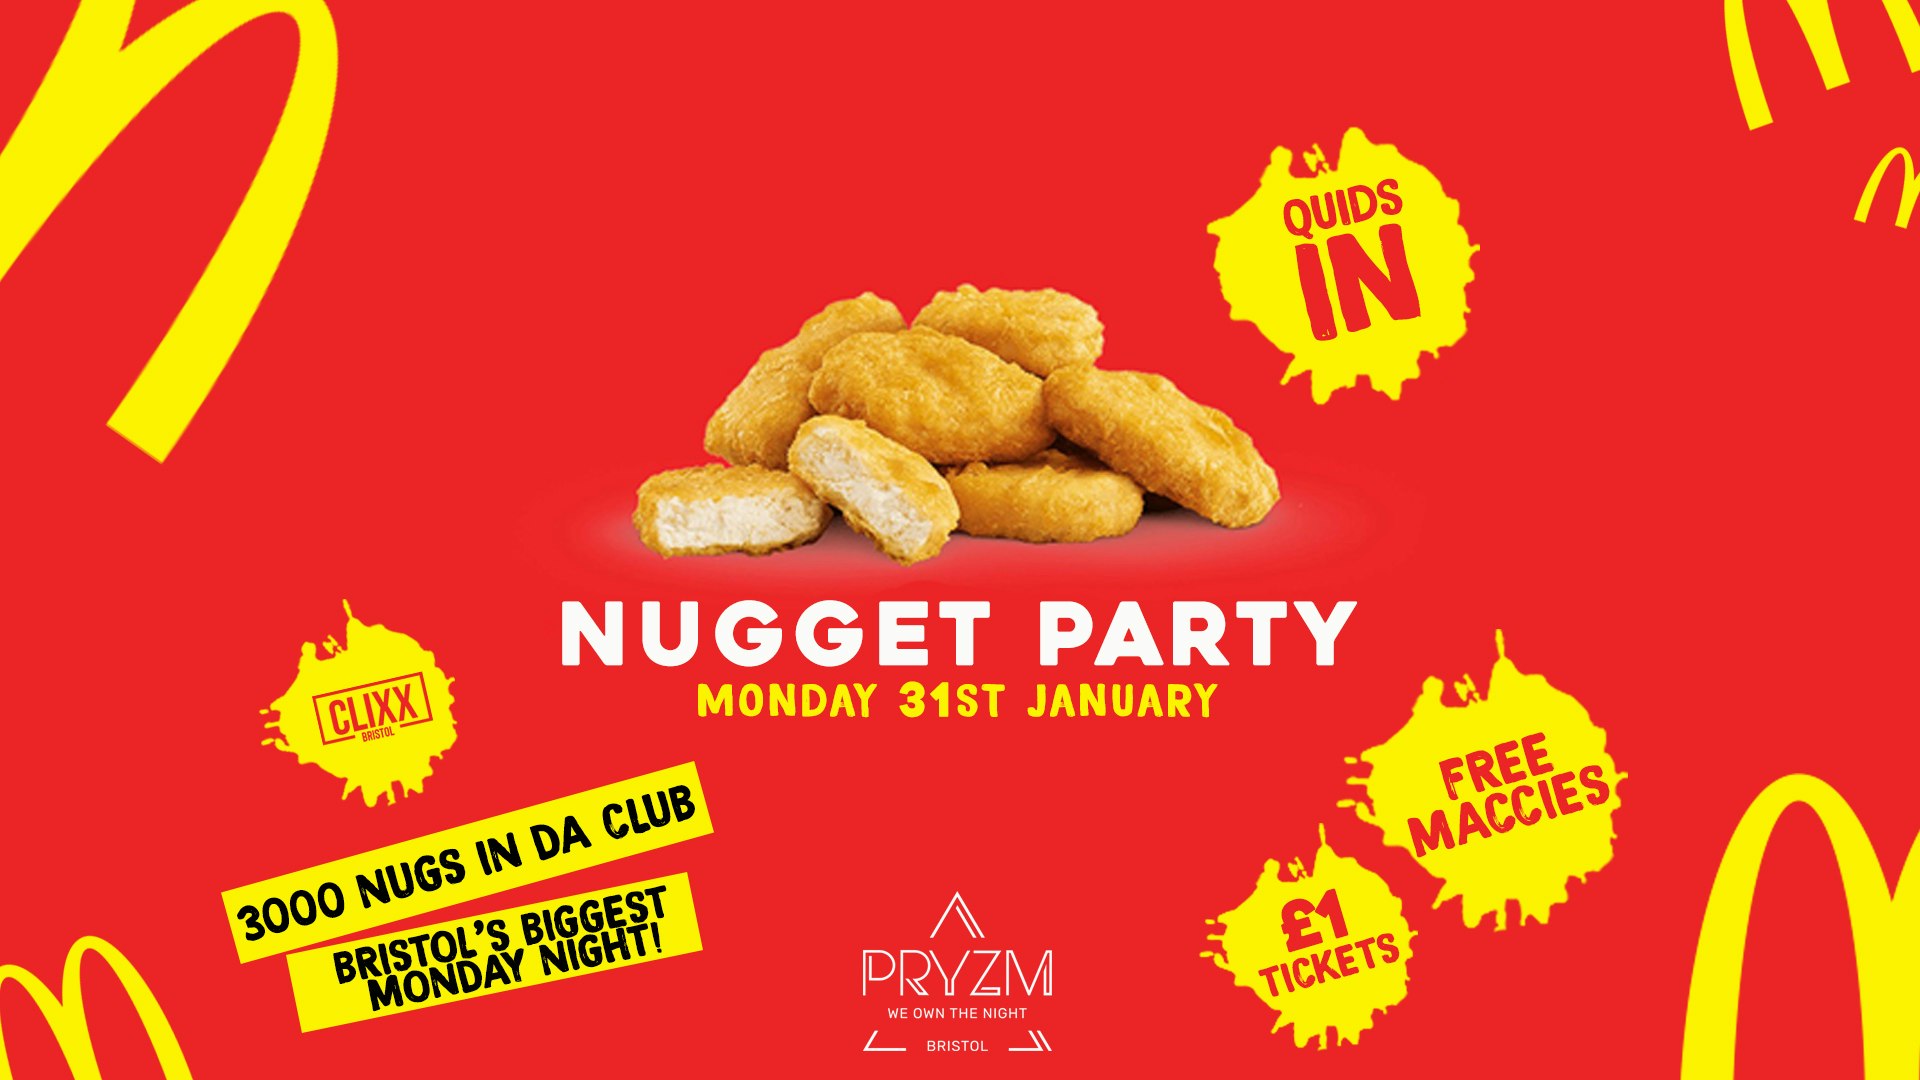 QUIDS IN / Nugget Party – 3000 Nugs in da club  –  £1 Tickets